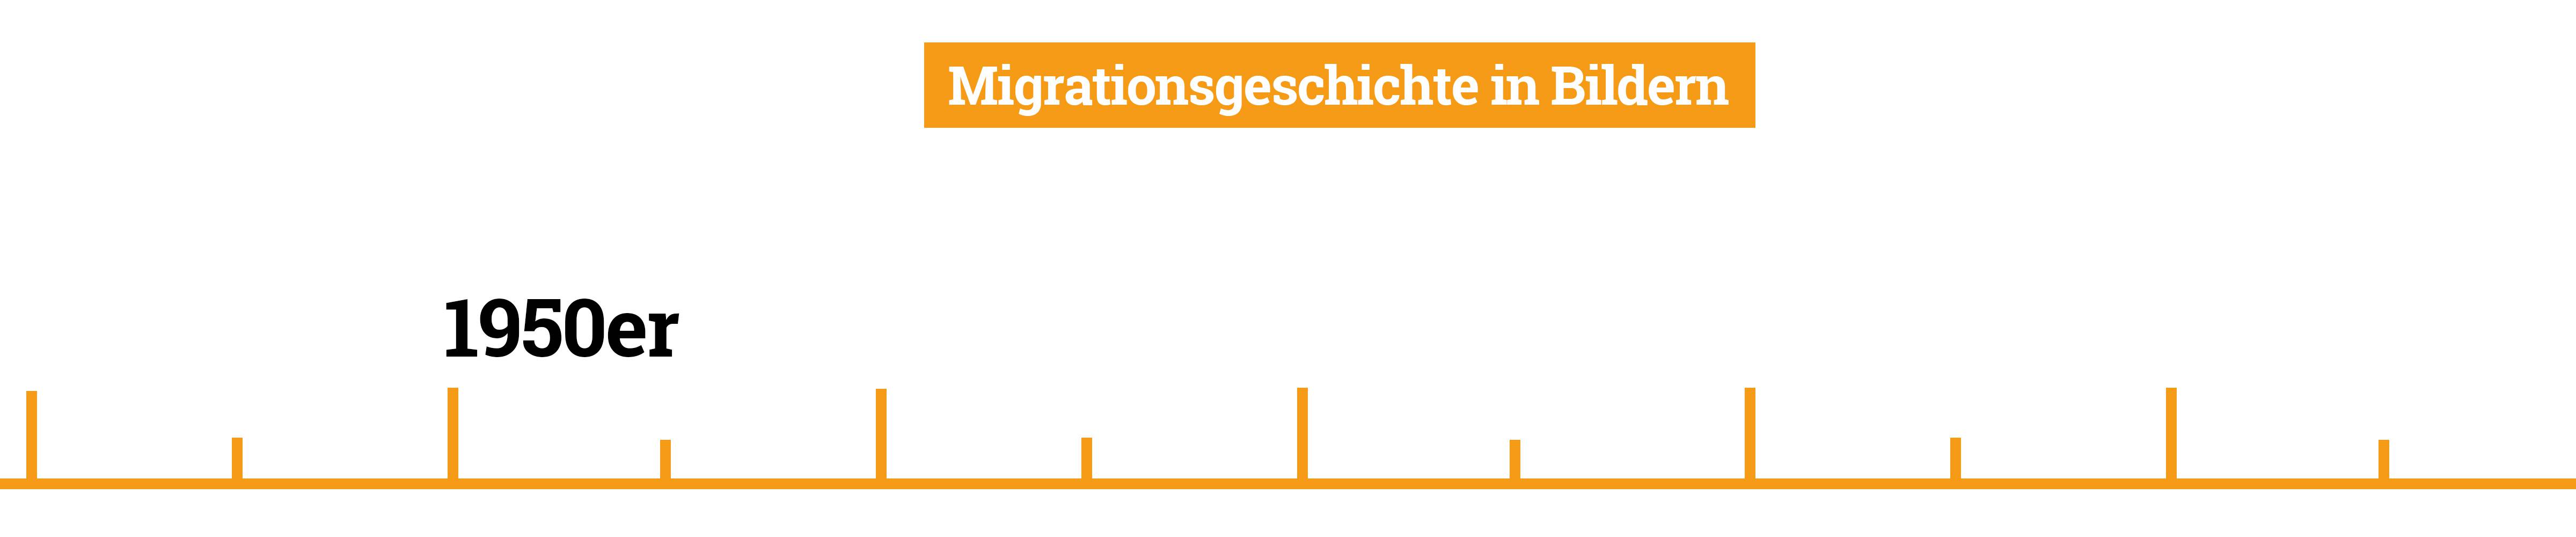 Motivserie "Migrationsgeschichte in Bildern"